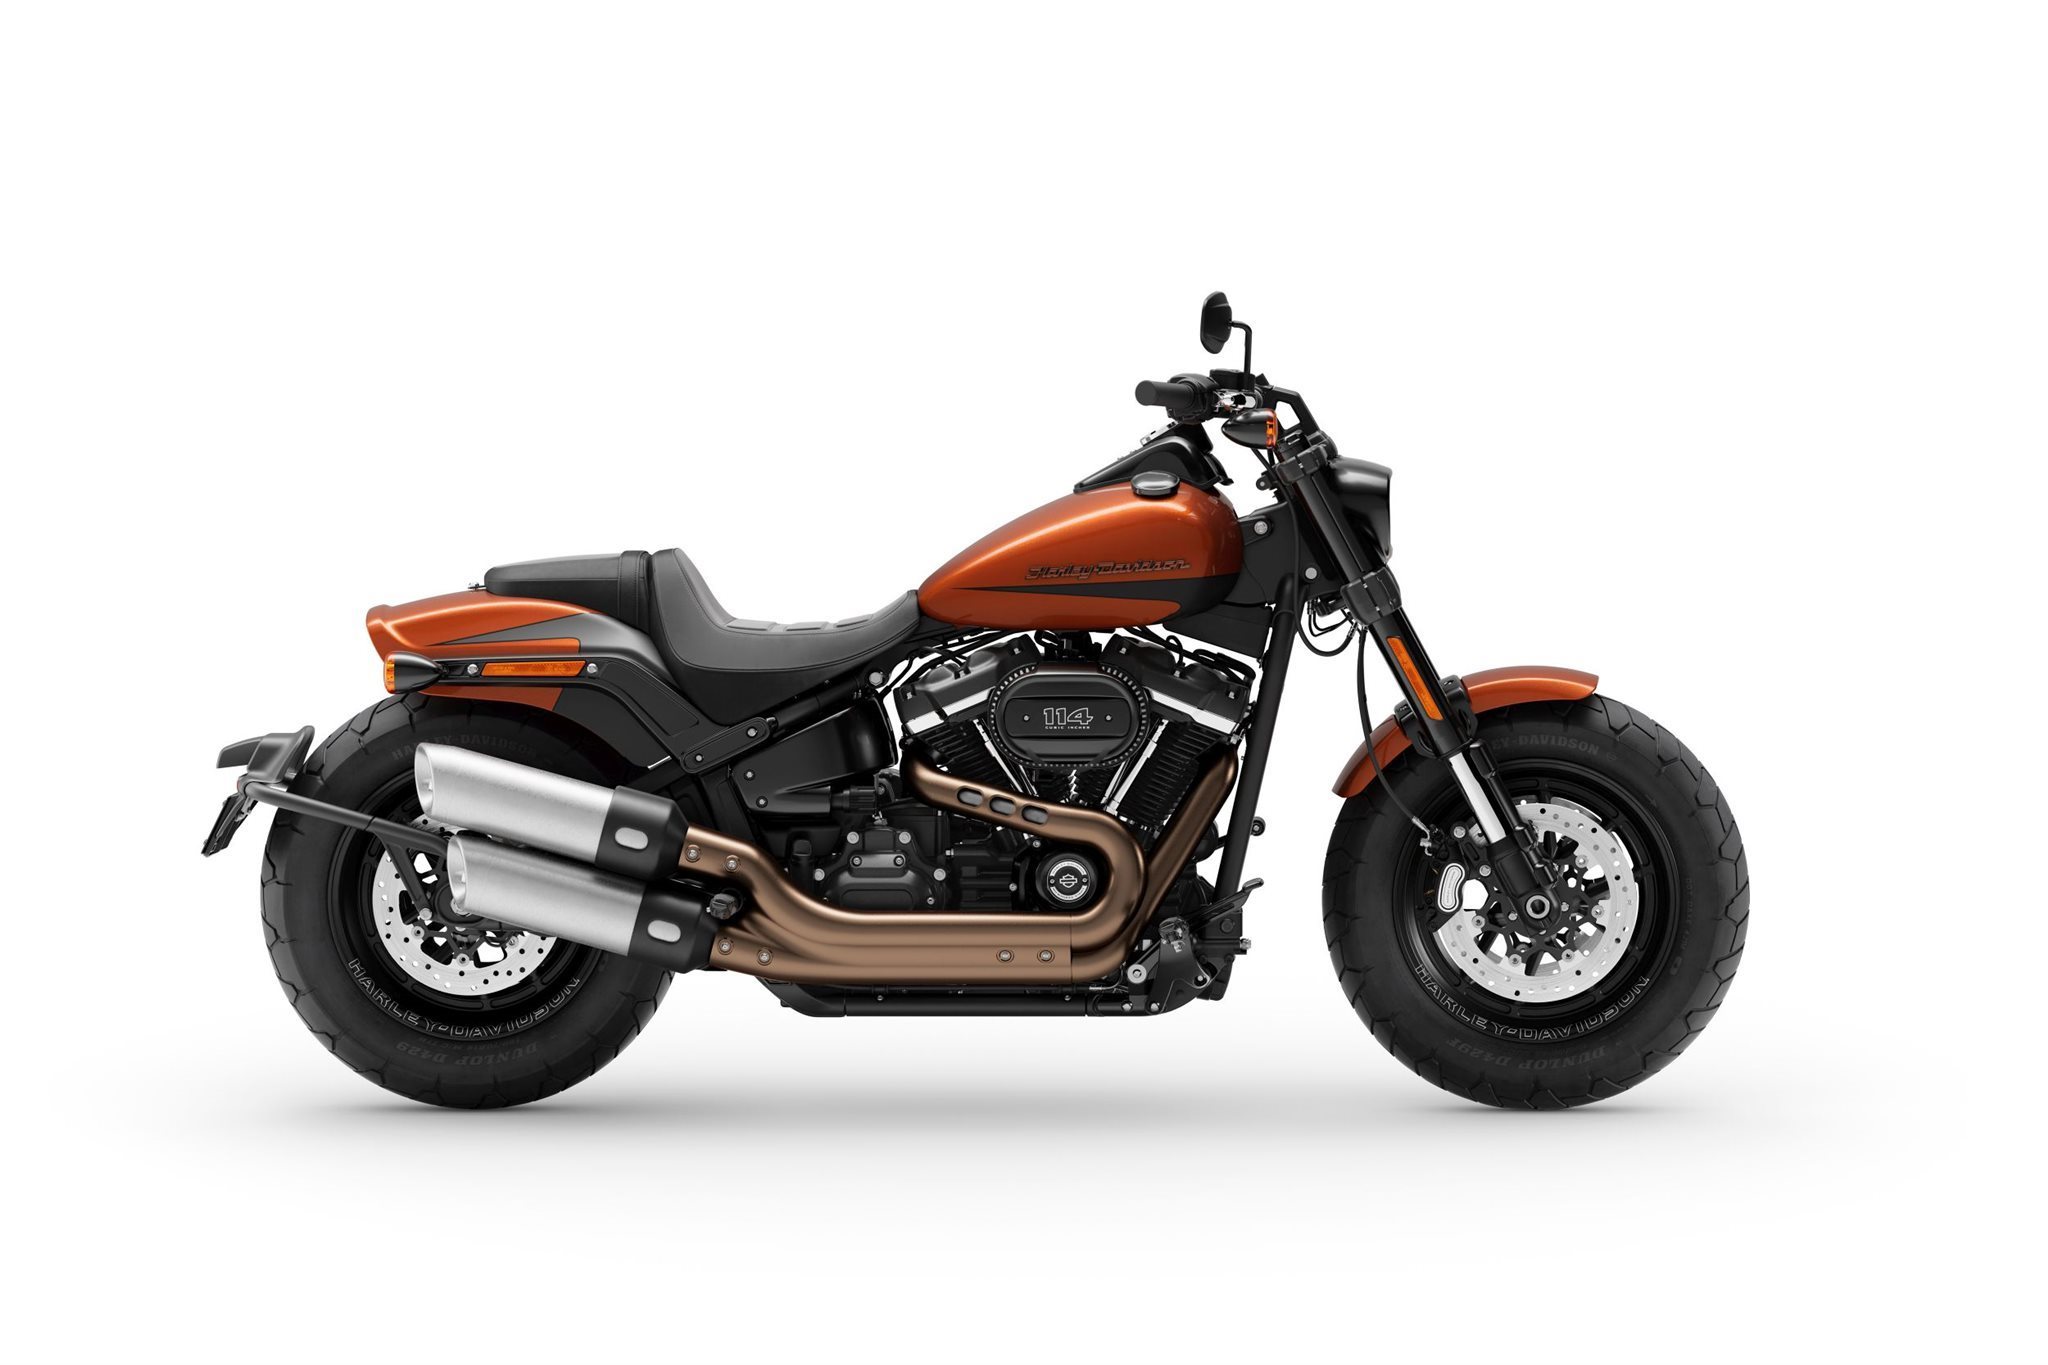 Motorrad Vergleich Harley Davidson Softail Breakout 114 Fxbrs 2021 Vs Harley Davidson Softail Fat Bob 114 Fxfbs 2021